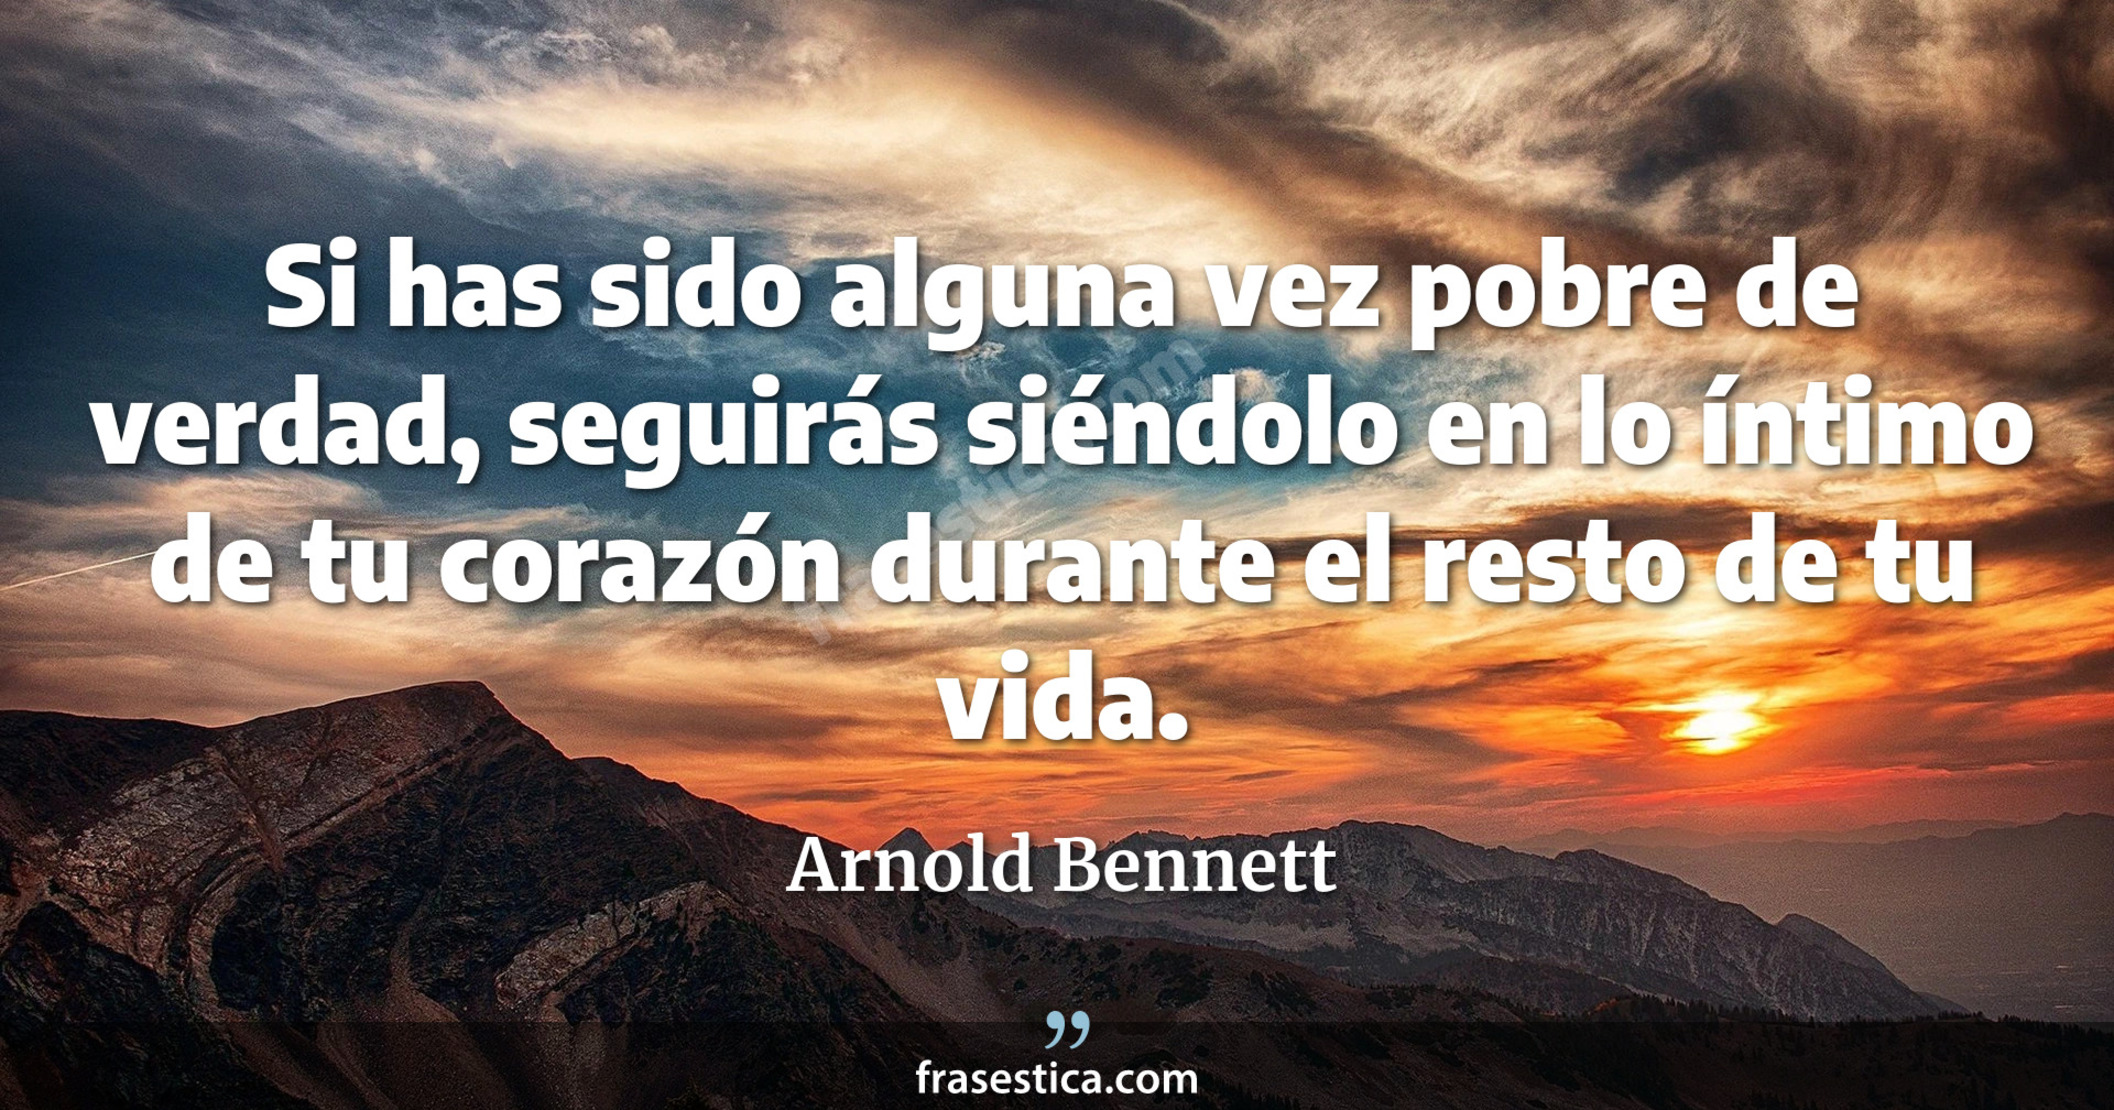 Si has sido alguna vez pobre de verdad, seguirás siéndolo en lo íntimo de tu corazón durante el resto de tu vida. - Arnold Bennett